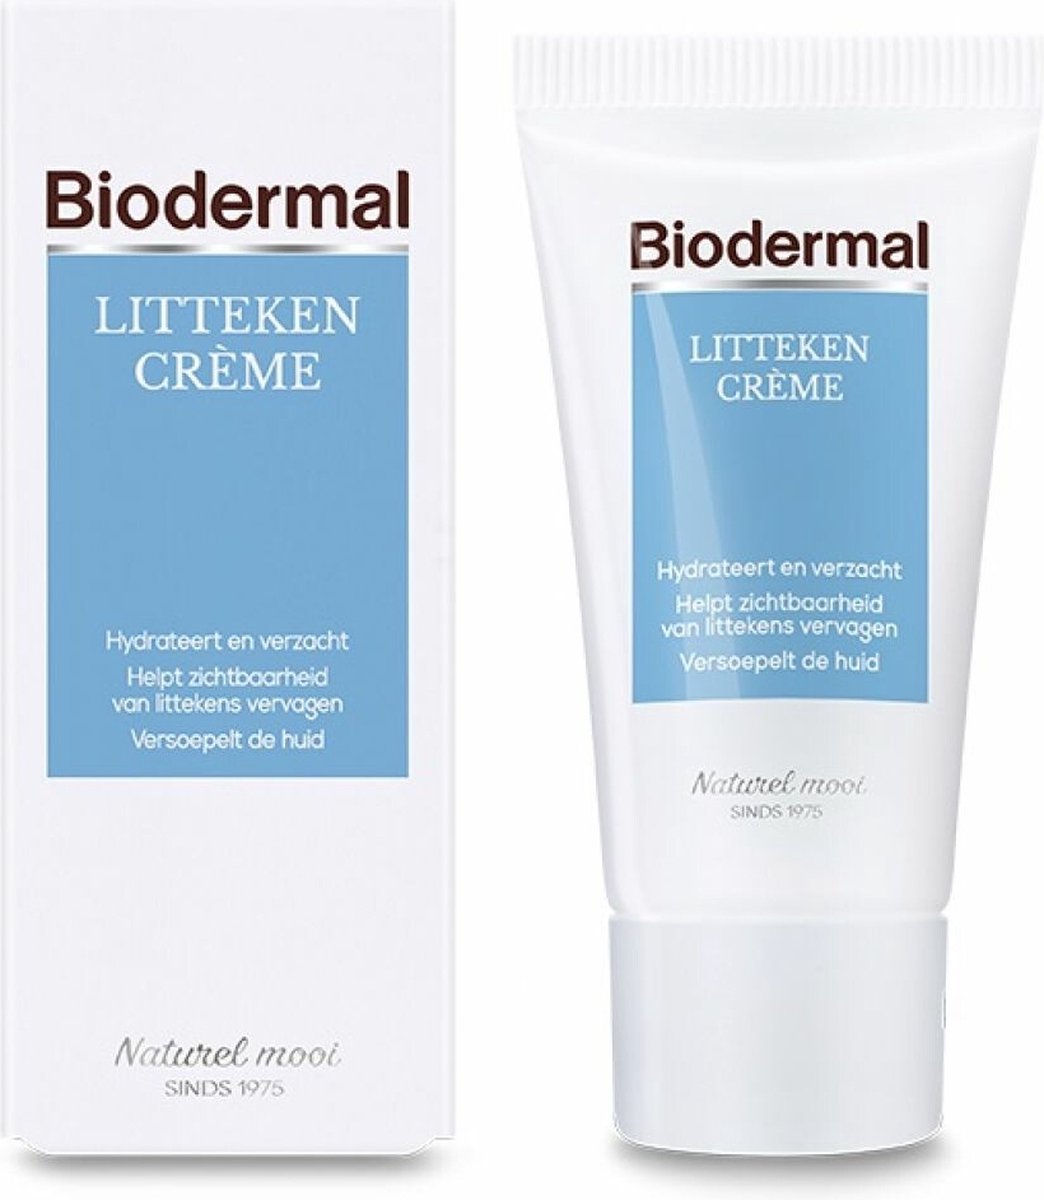 Biodermal Littekencrème - Vermindert zichtbaarheid van littekens - Littekencreme tube 25ml - Biodermal